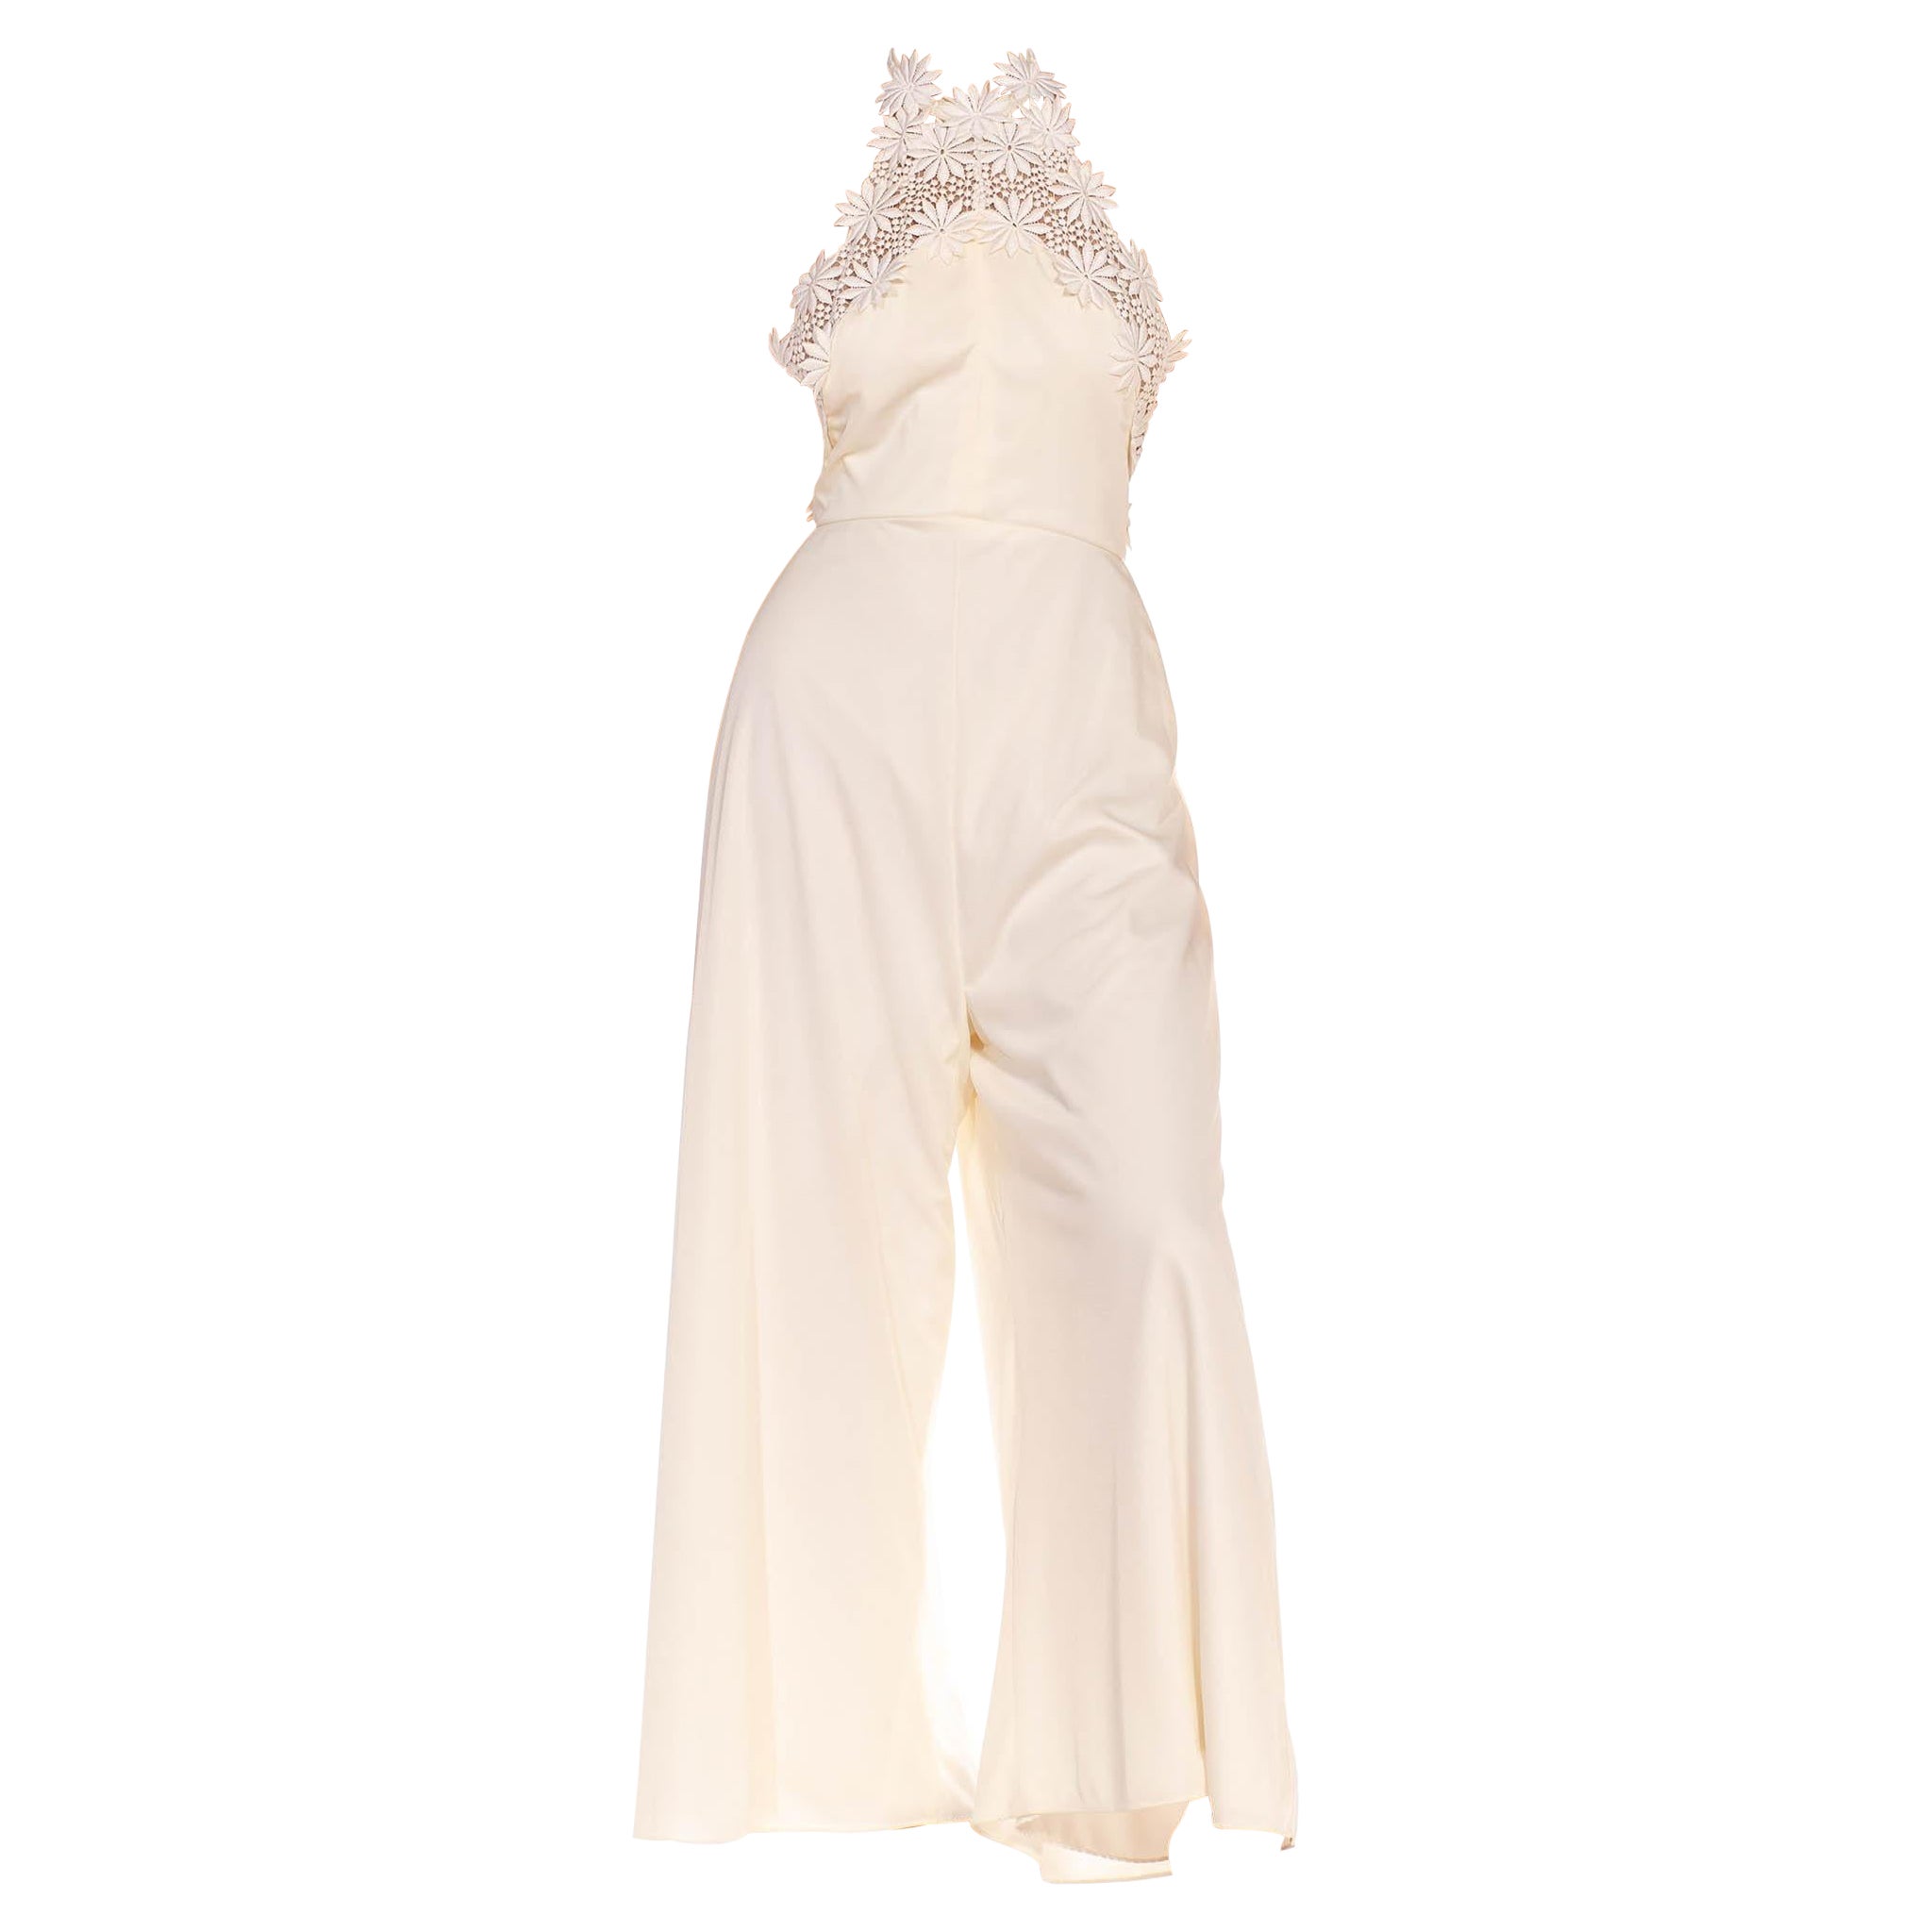 1970S White Nylon Floral Lace Halter Neck Jumpsuit